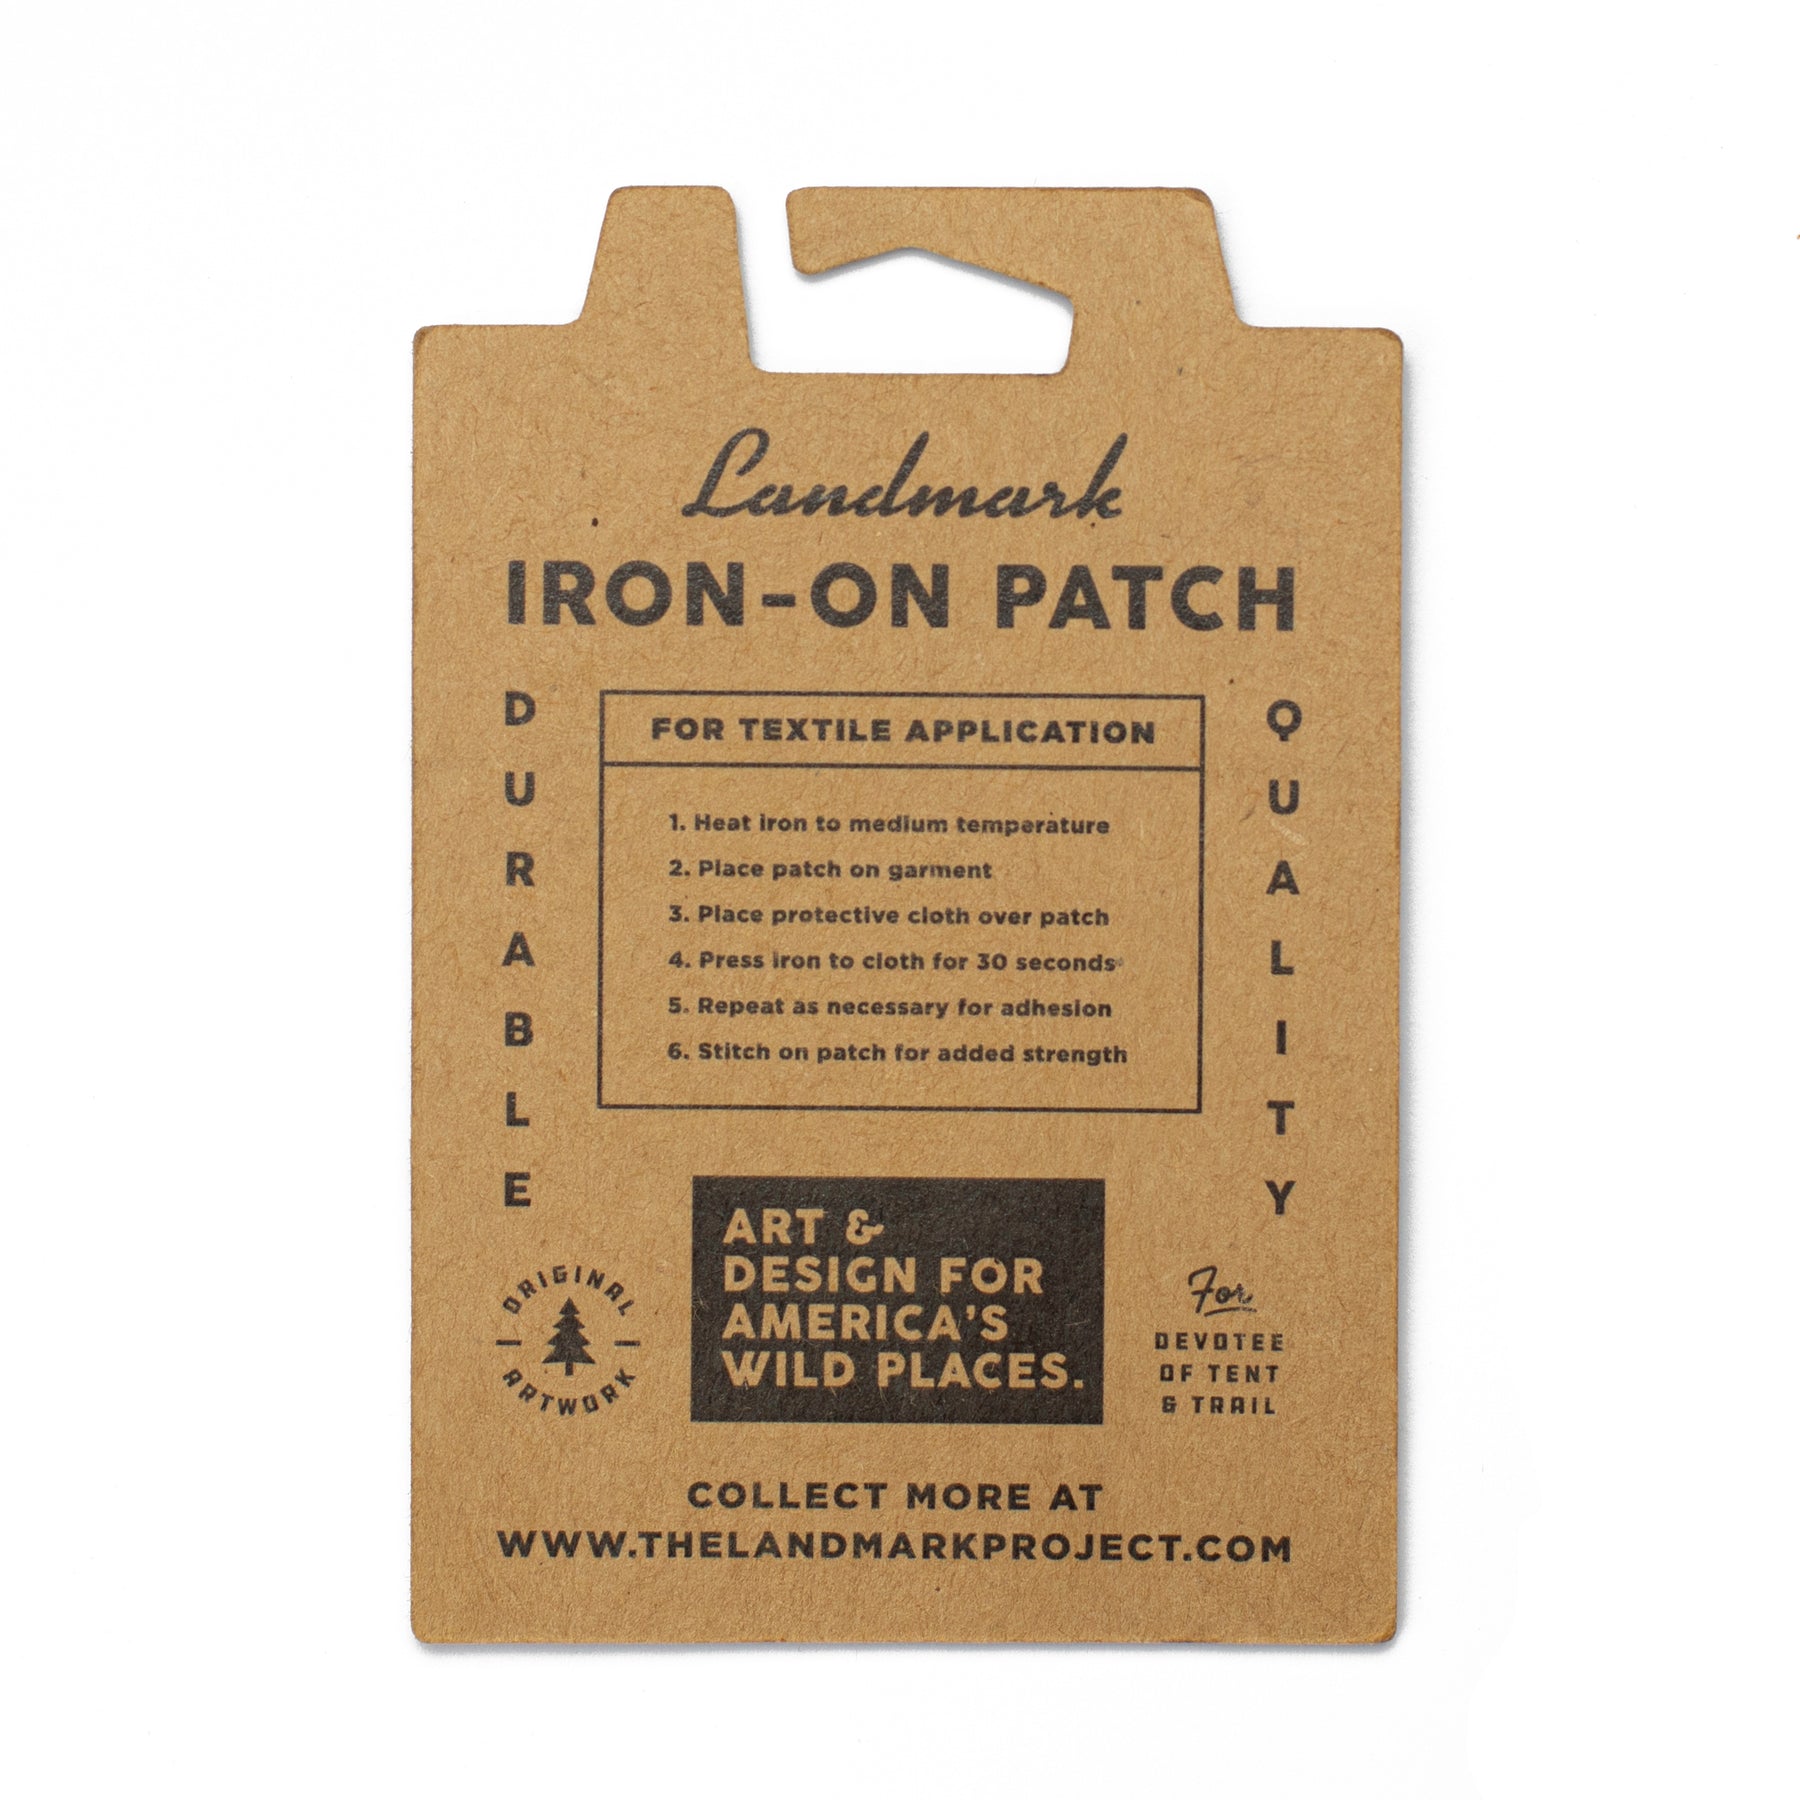 Stitch Iron On Patch | Lilo And Stitch Iron on patch | Disney Iron On Patch  | Disney Gift